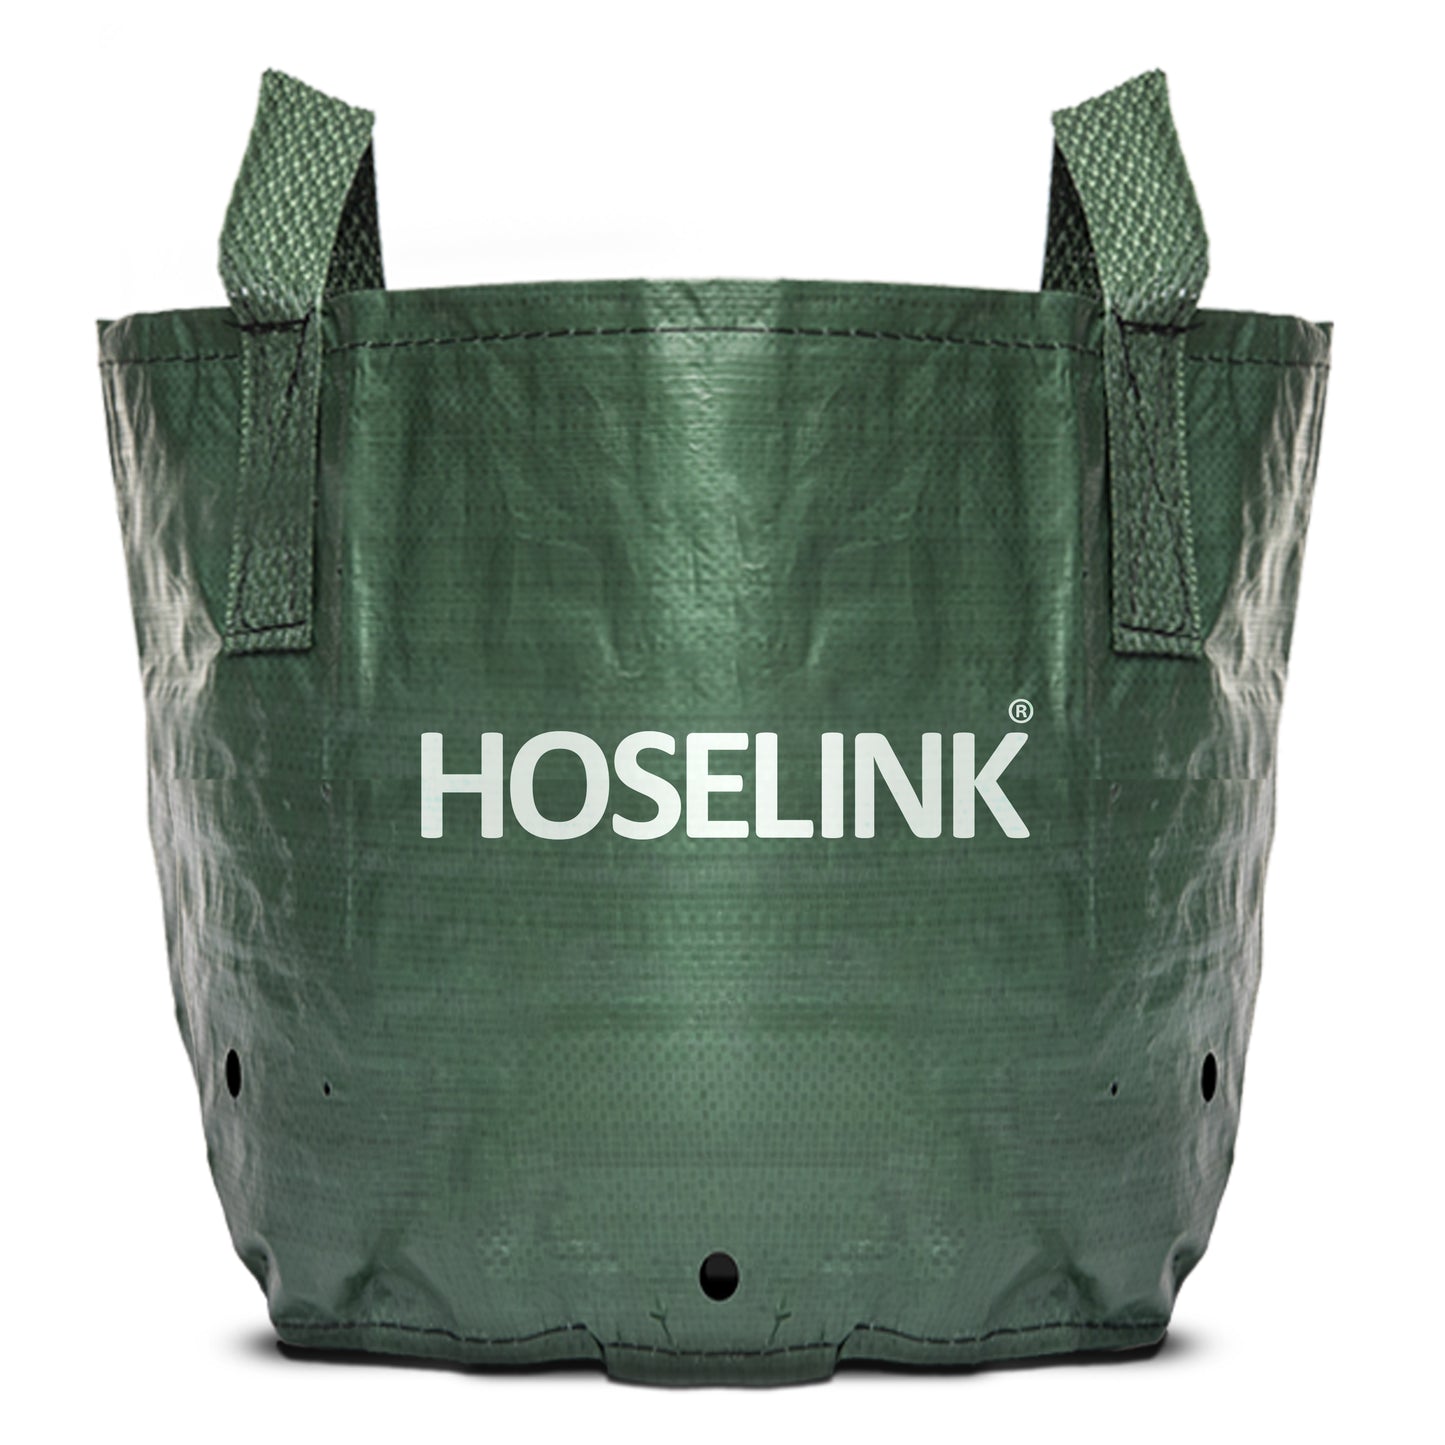 https://www.hoselink.com/cdn/shop/files/Heavy-Duty-Planter-Bag-45L.jpg?v=1701403800&width=1445